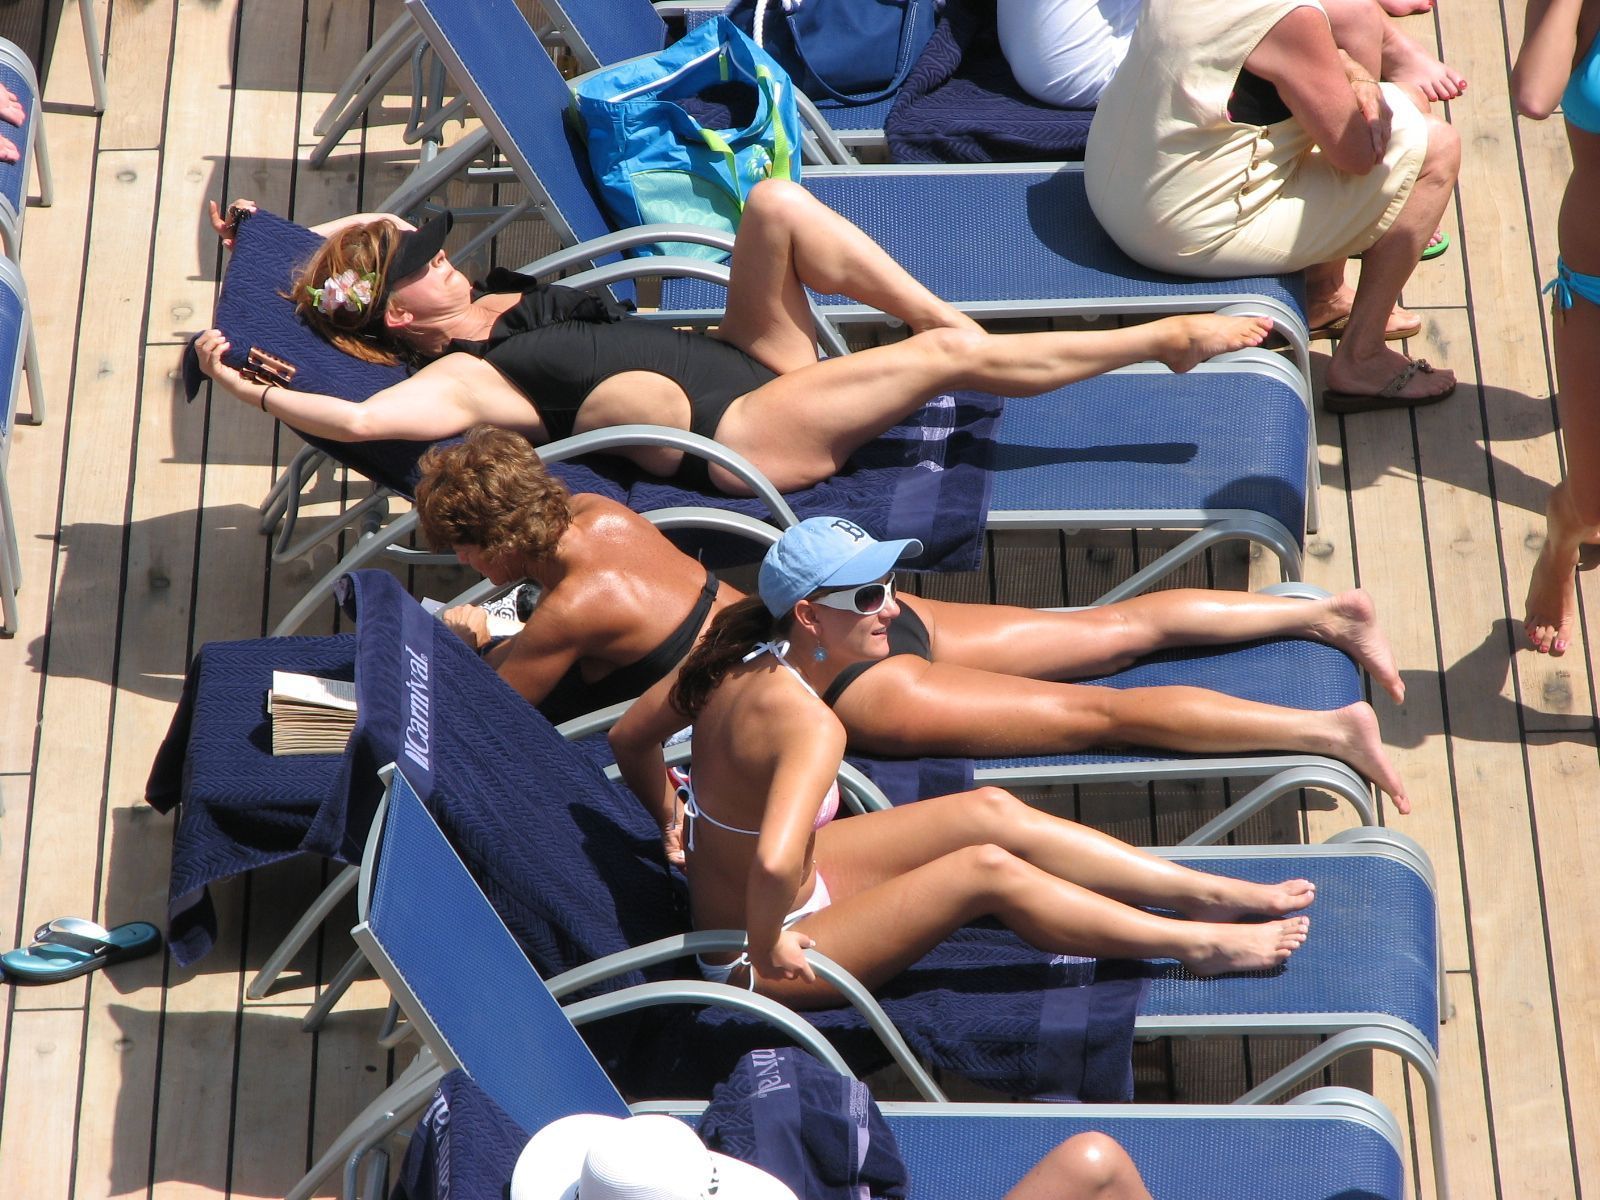 Voyeur cruise ship photos hq nude pic